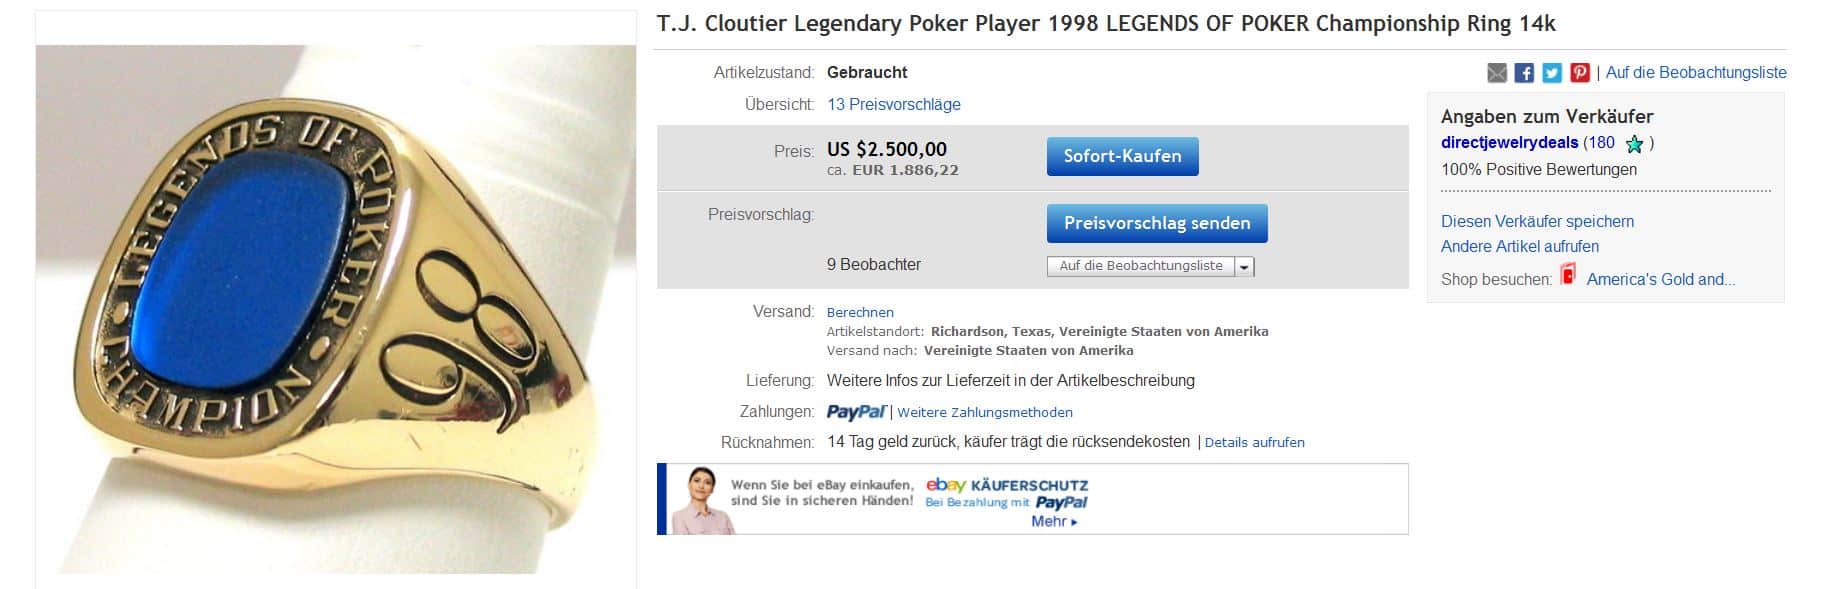 Fundstück! Legends of Poker Championship Ring (1998) von T.J. Cloutier bei Ebay!